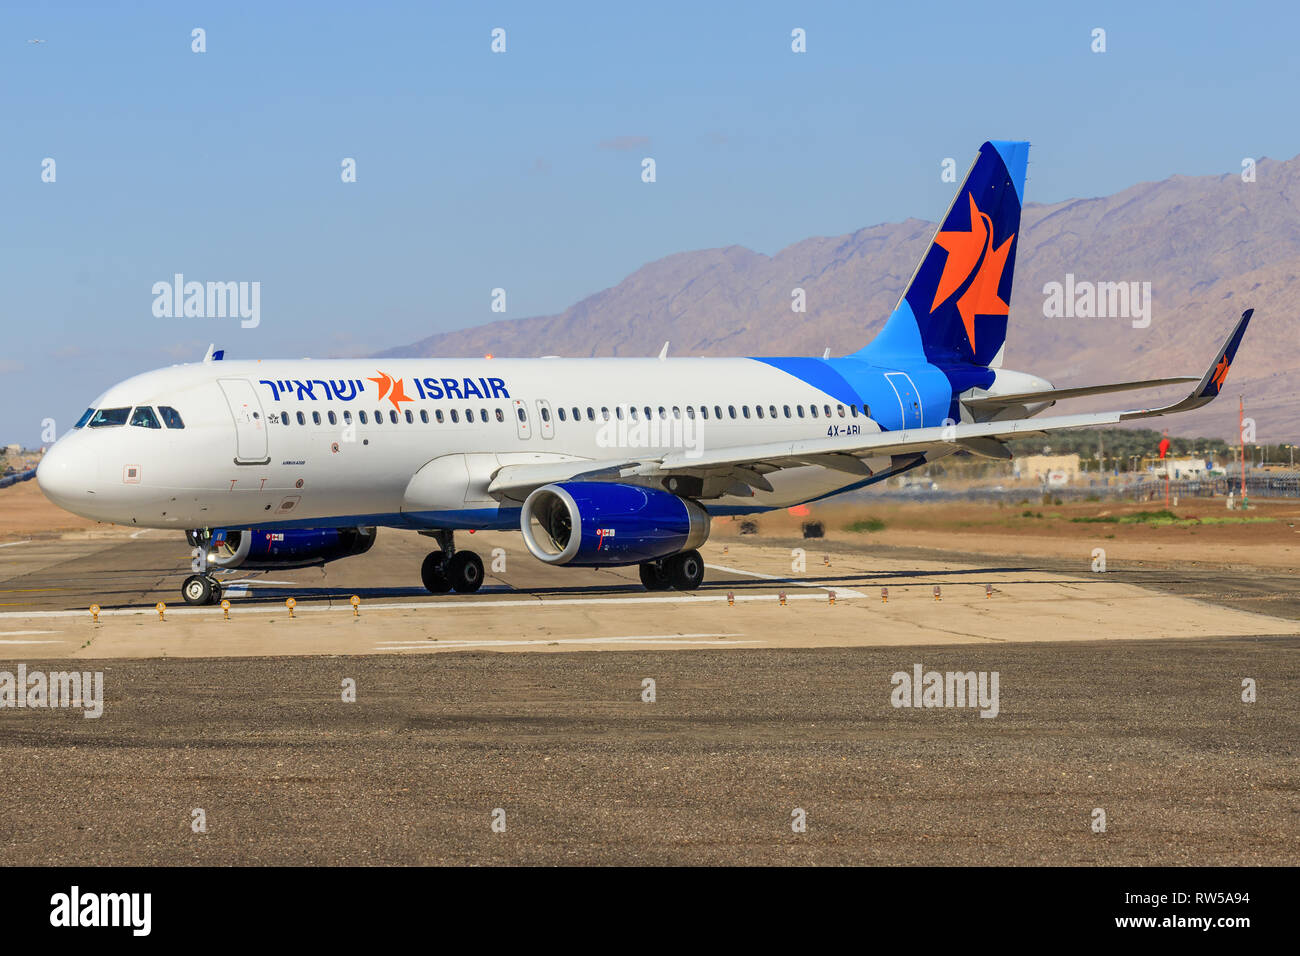 Eilat, Israël - 24 Février, 2019 : Israir Airlines ATR 72-200 à l'ancien hôtel de l'aéroport international d'Eilat. Banque D'Images